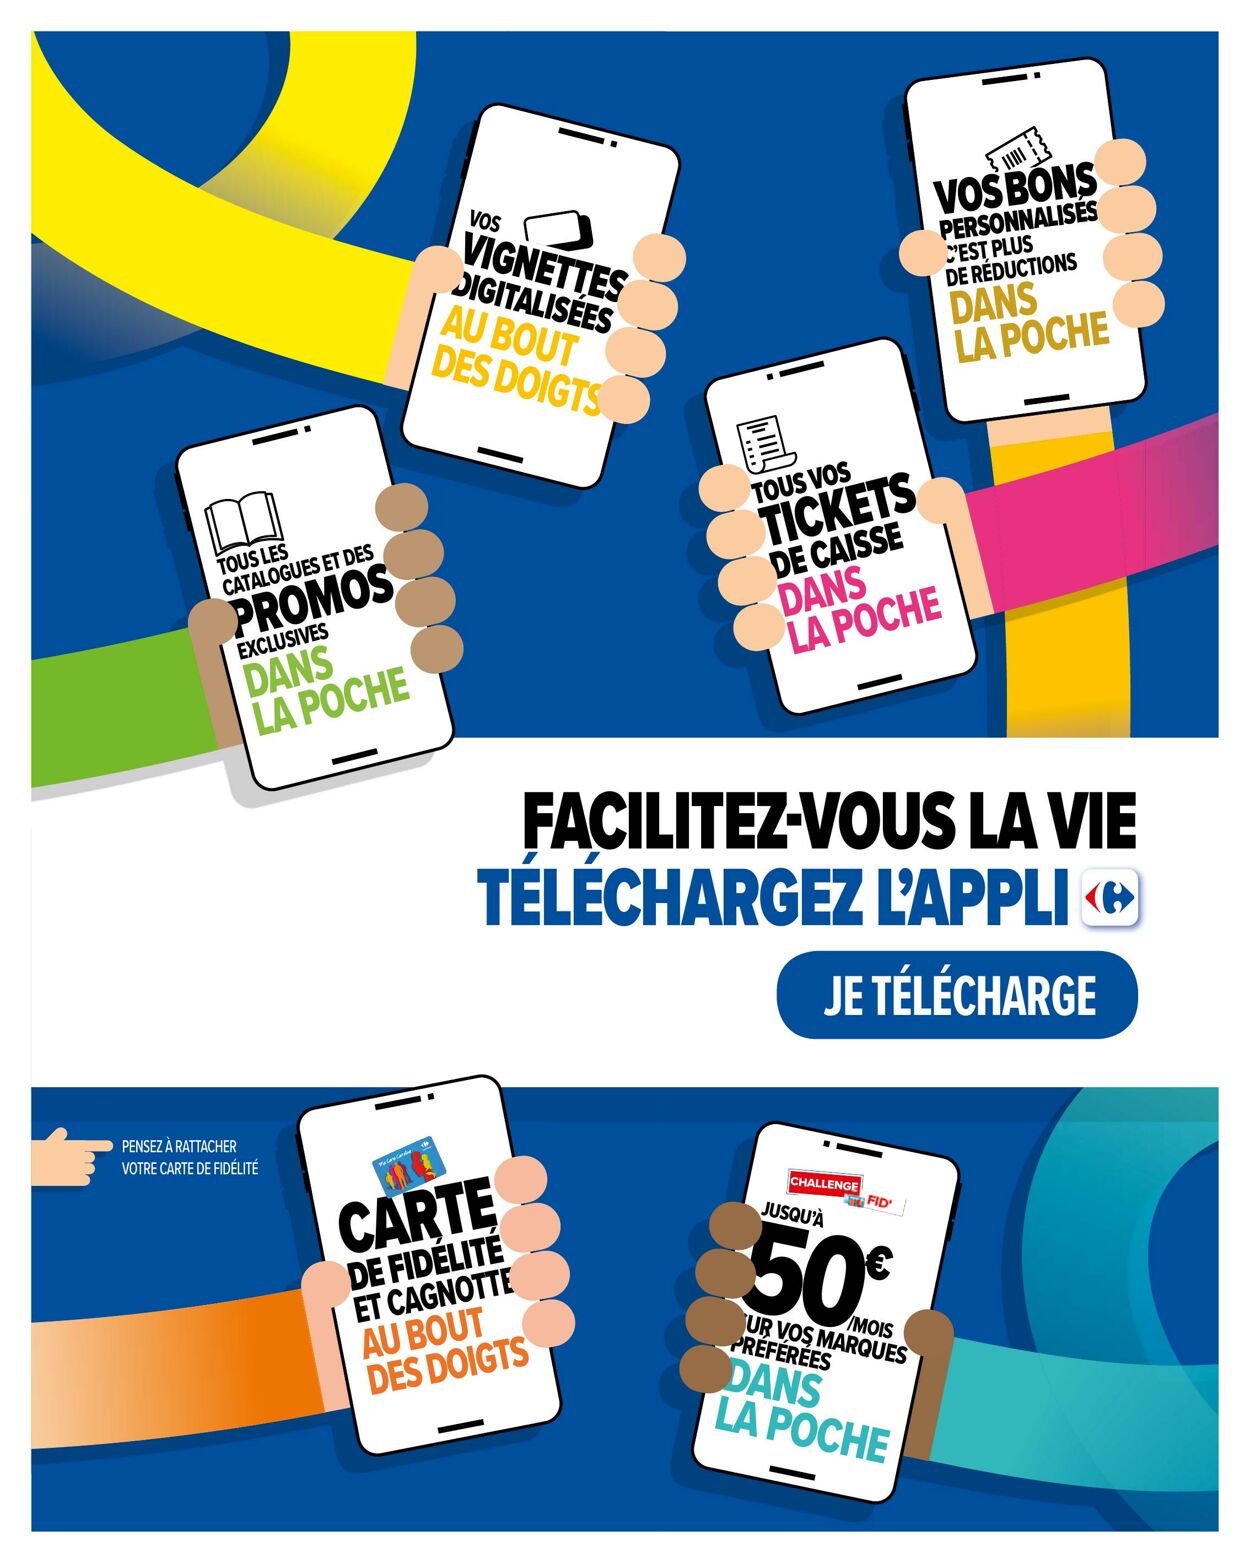 Carrefour Catalogue du 26.12.2023